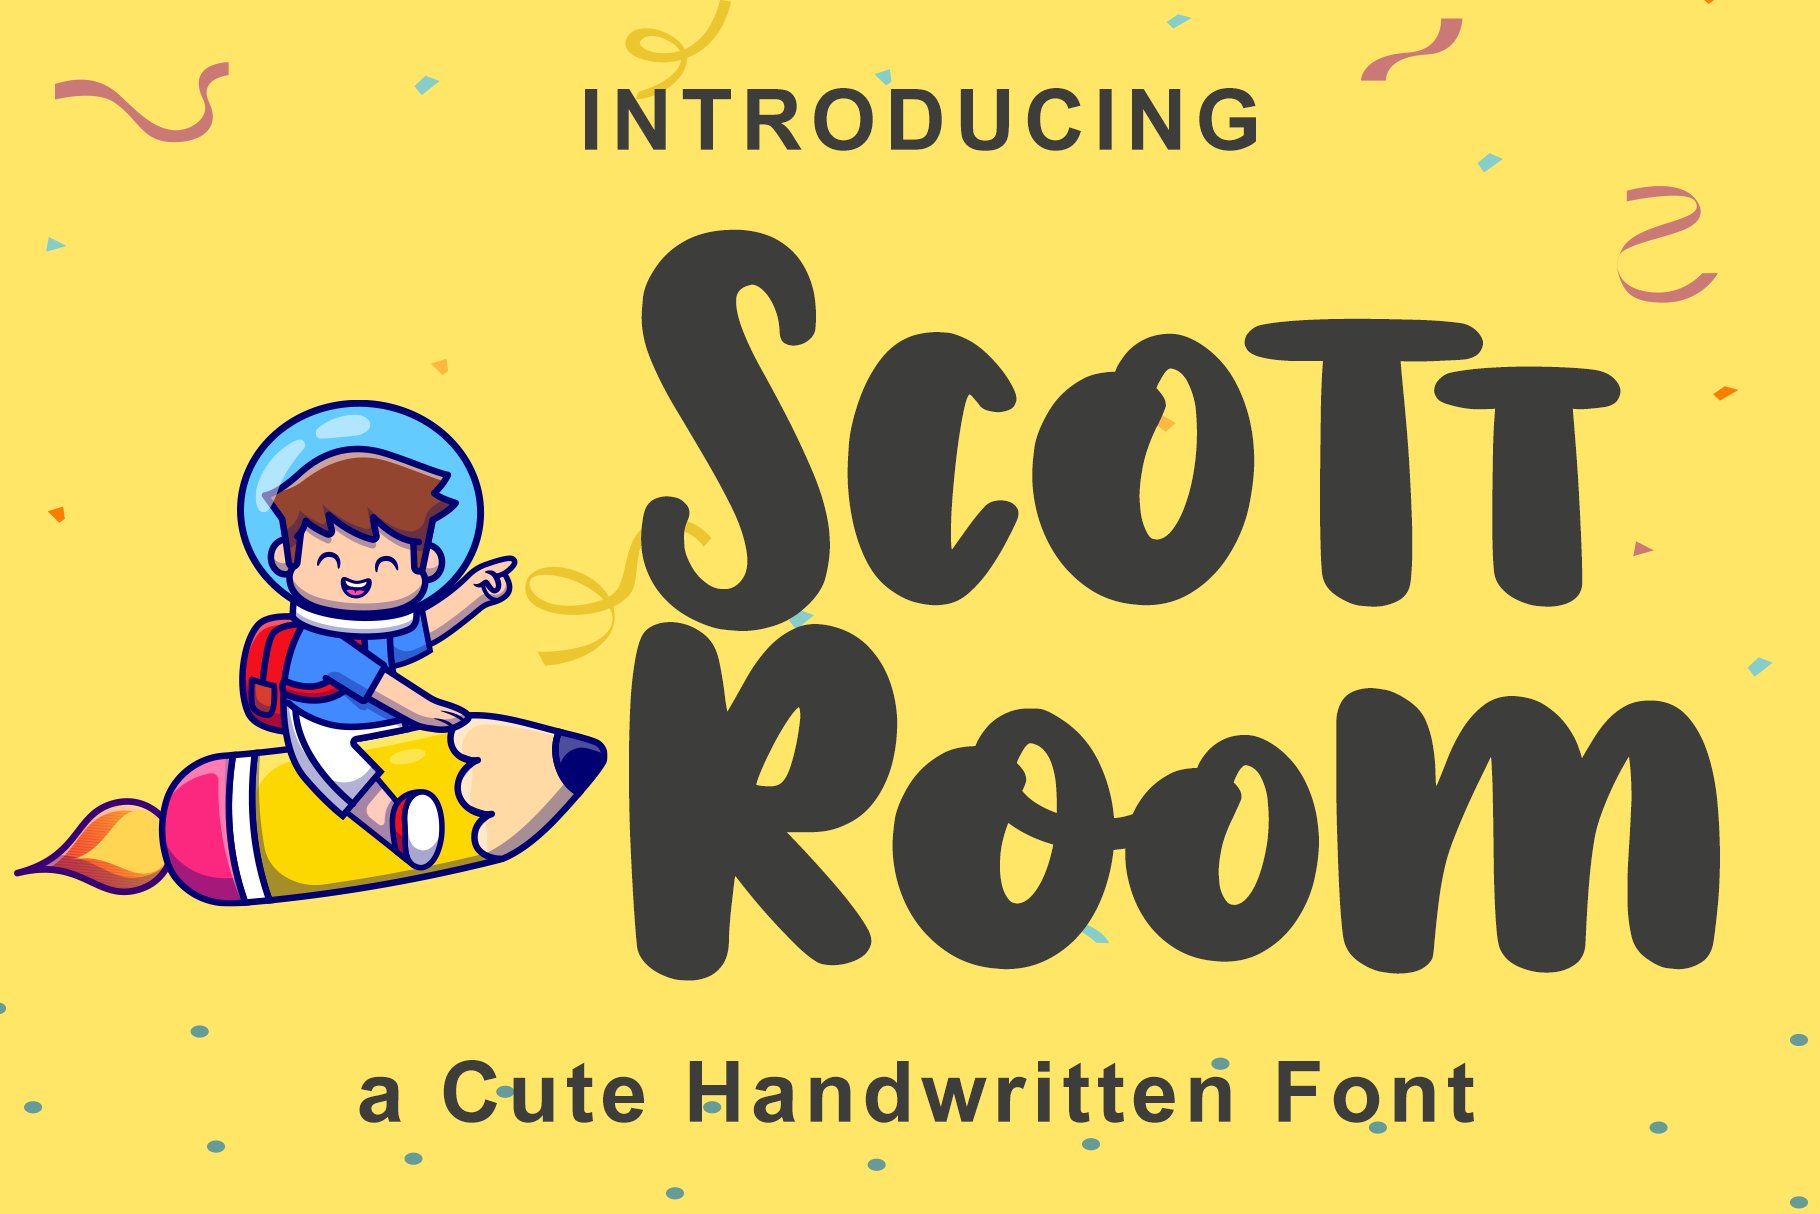 Scott Room - Playful Font cover image.